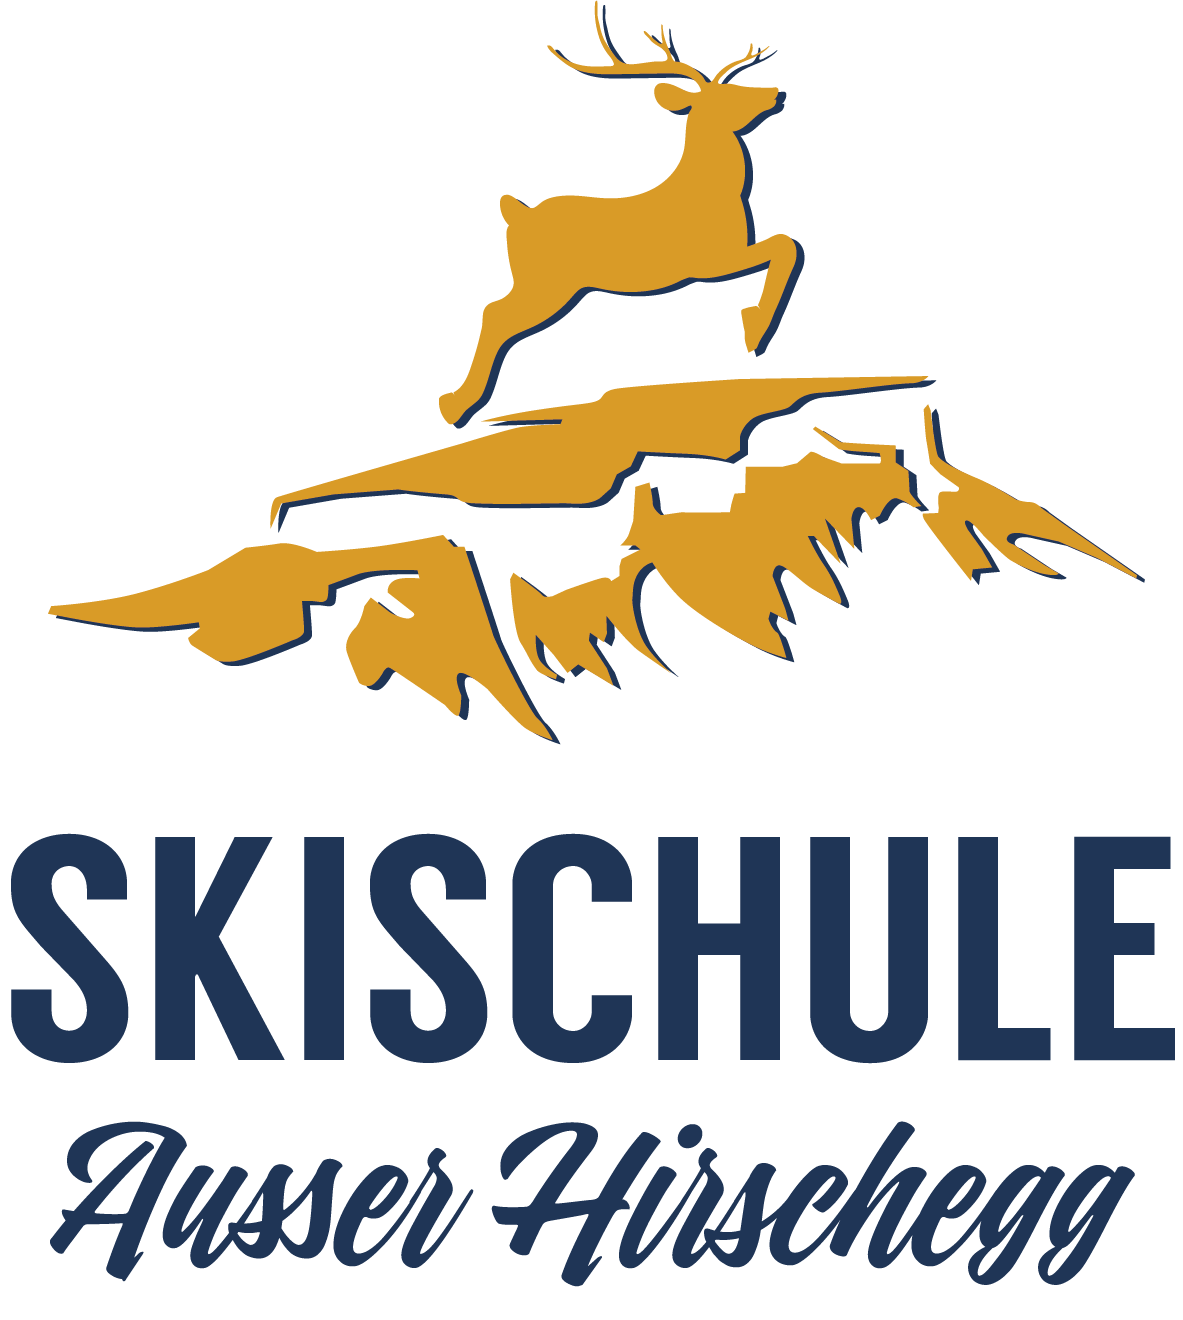 Die Skischule / Ausser Hirschegg - Logo